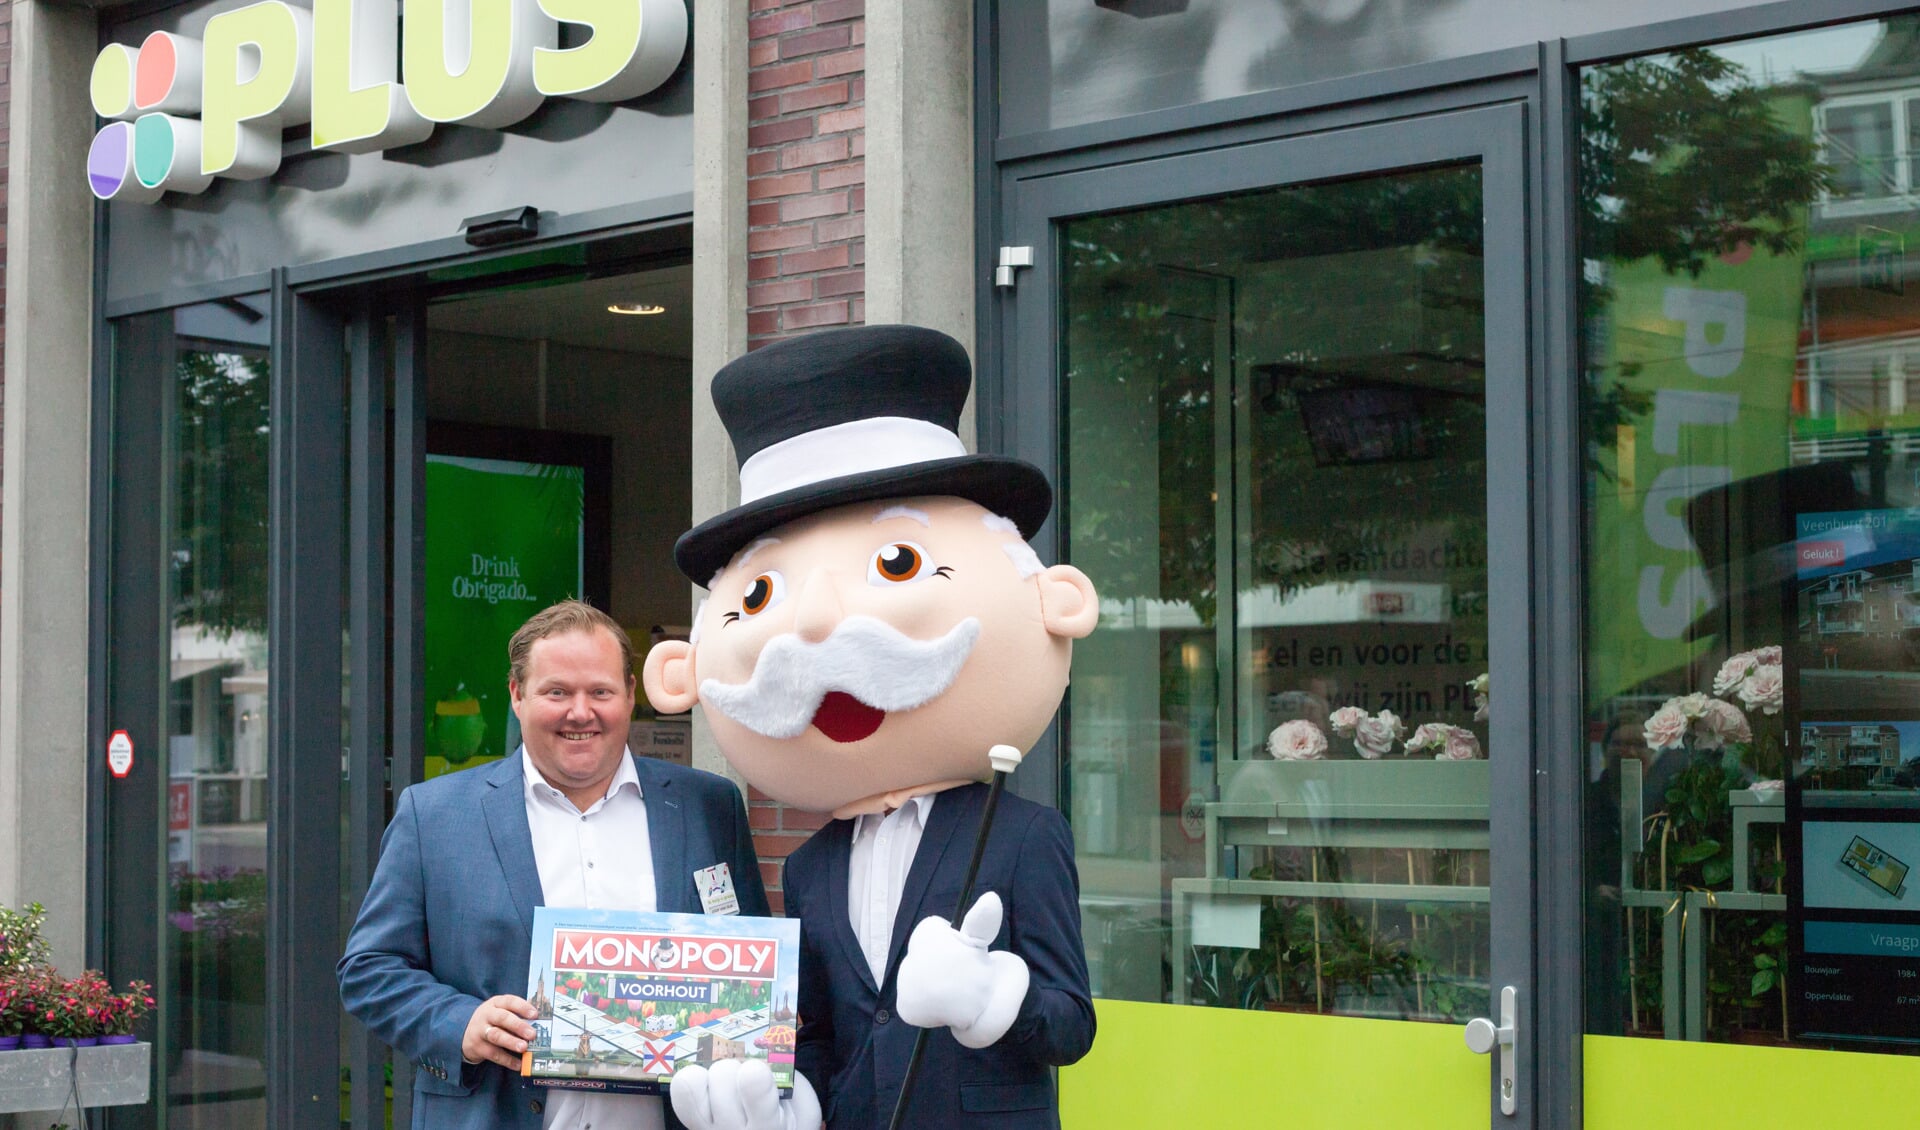 Joop van Dijk krijgt de symbolische editie Monopoly Voorhout overhandigd. | Foto: pr.